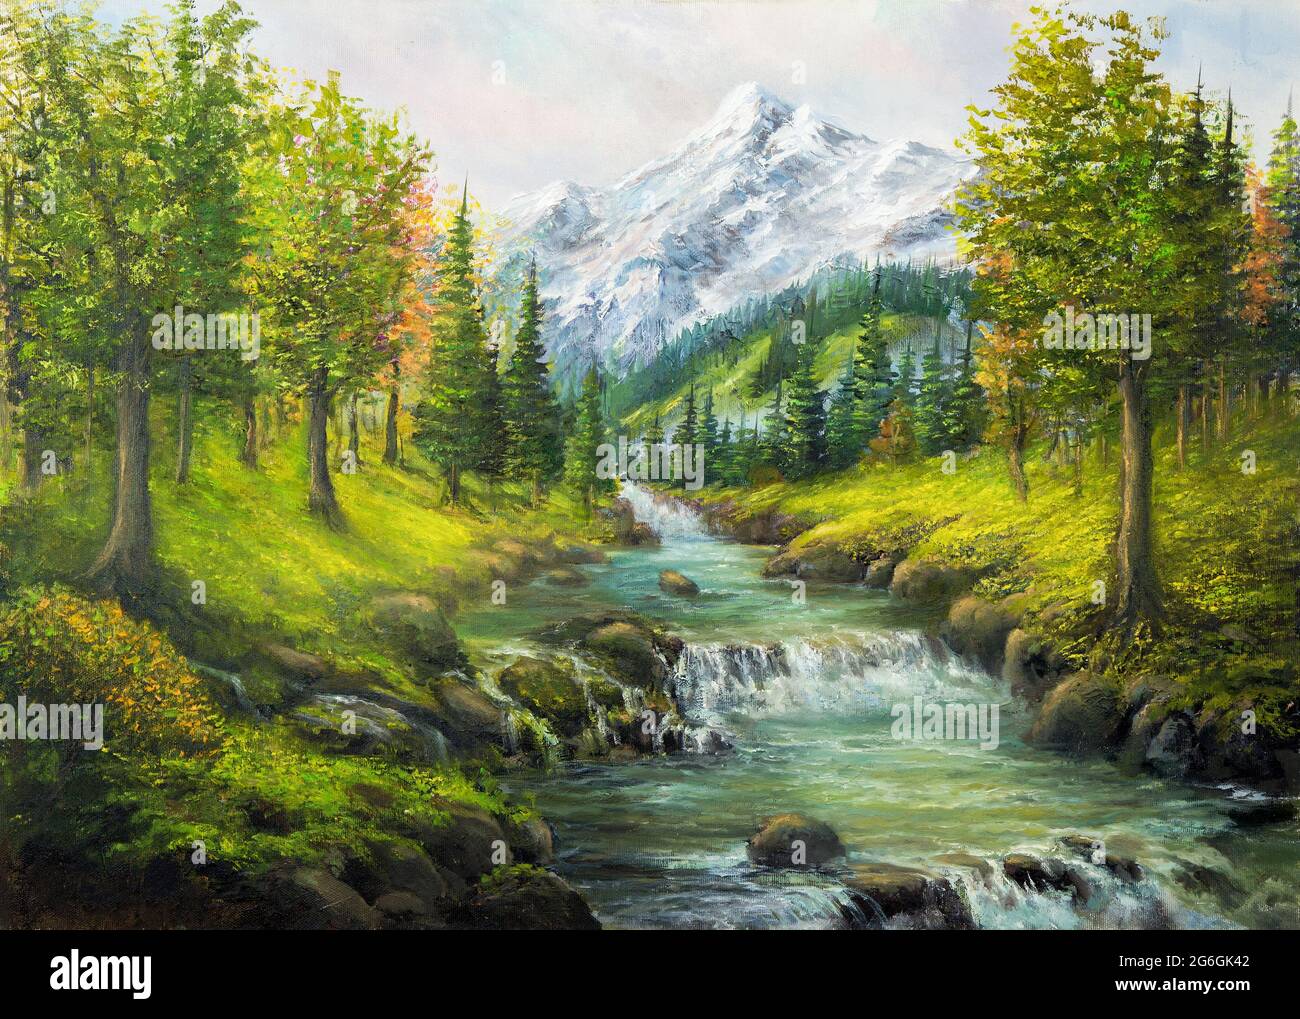 Peinture à l'huile originale du paysage de source d'beautifl, forêt, montagnes de neige et rivière sur toile.Impressionnisme moderne, modernisme, marinisme Banque D'Images